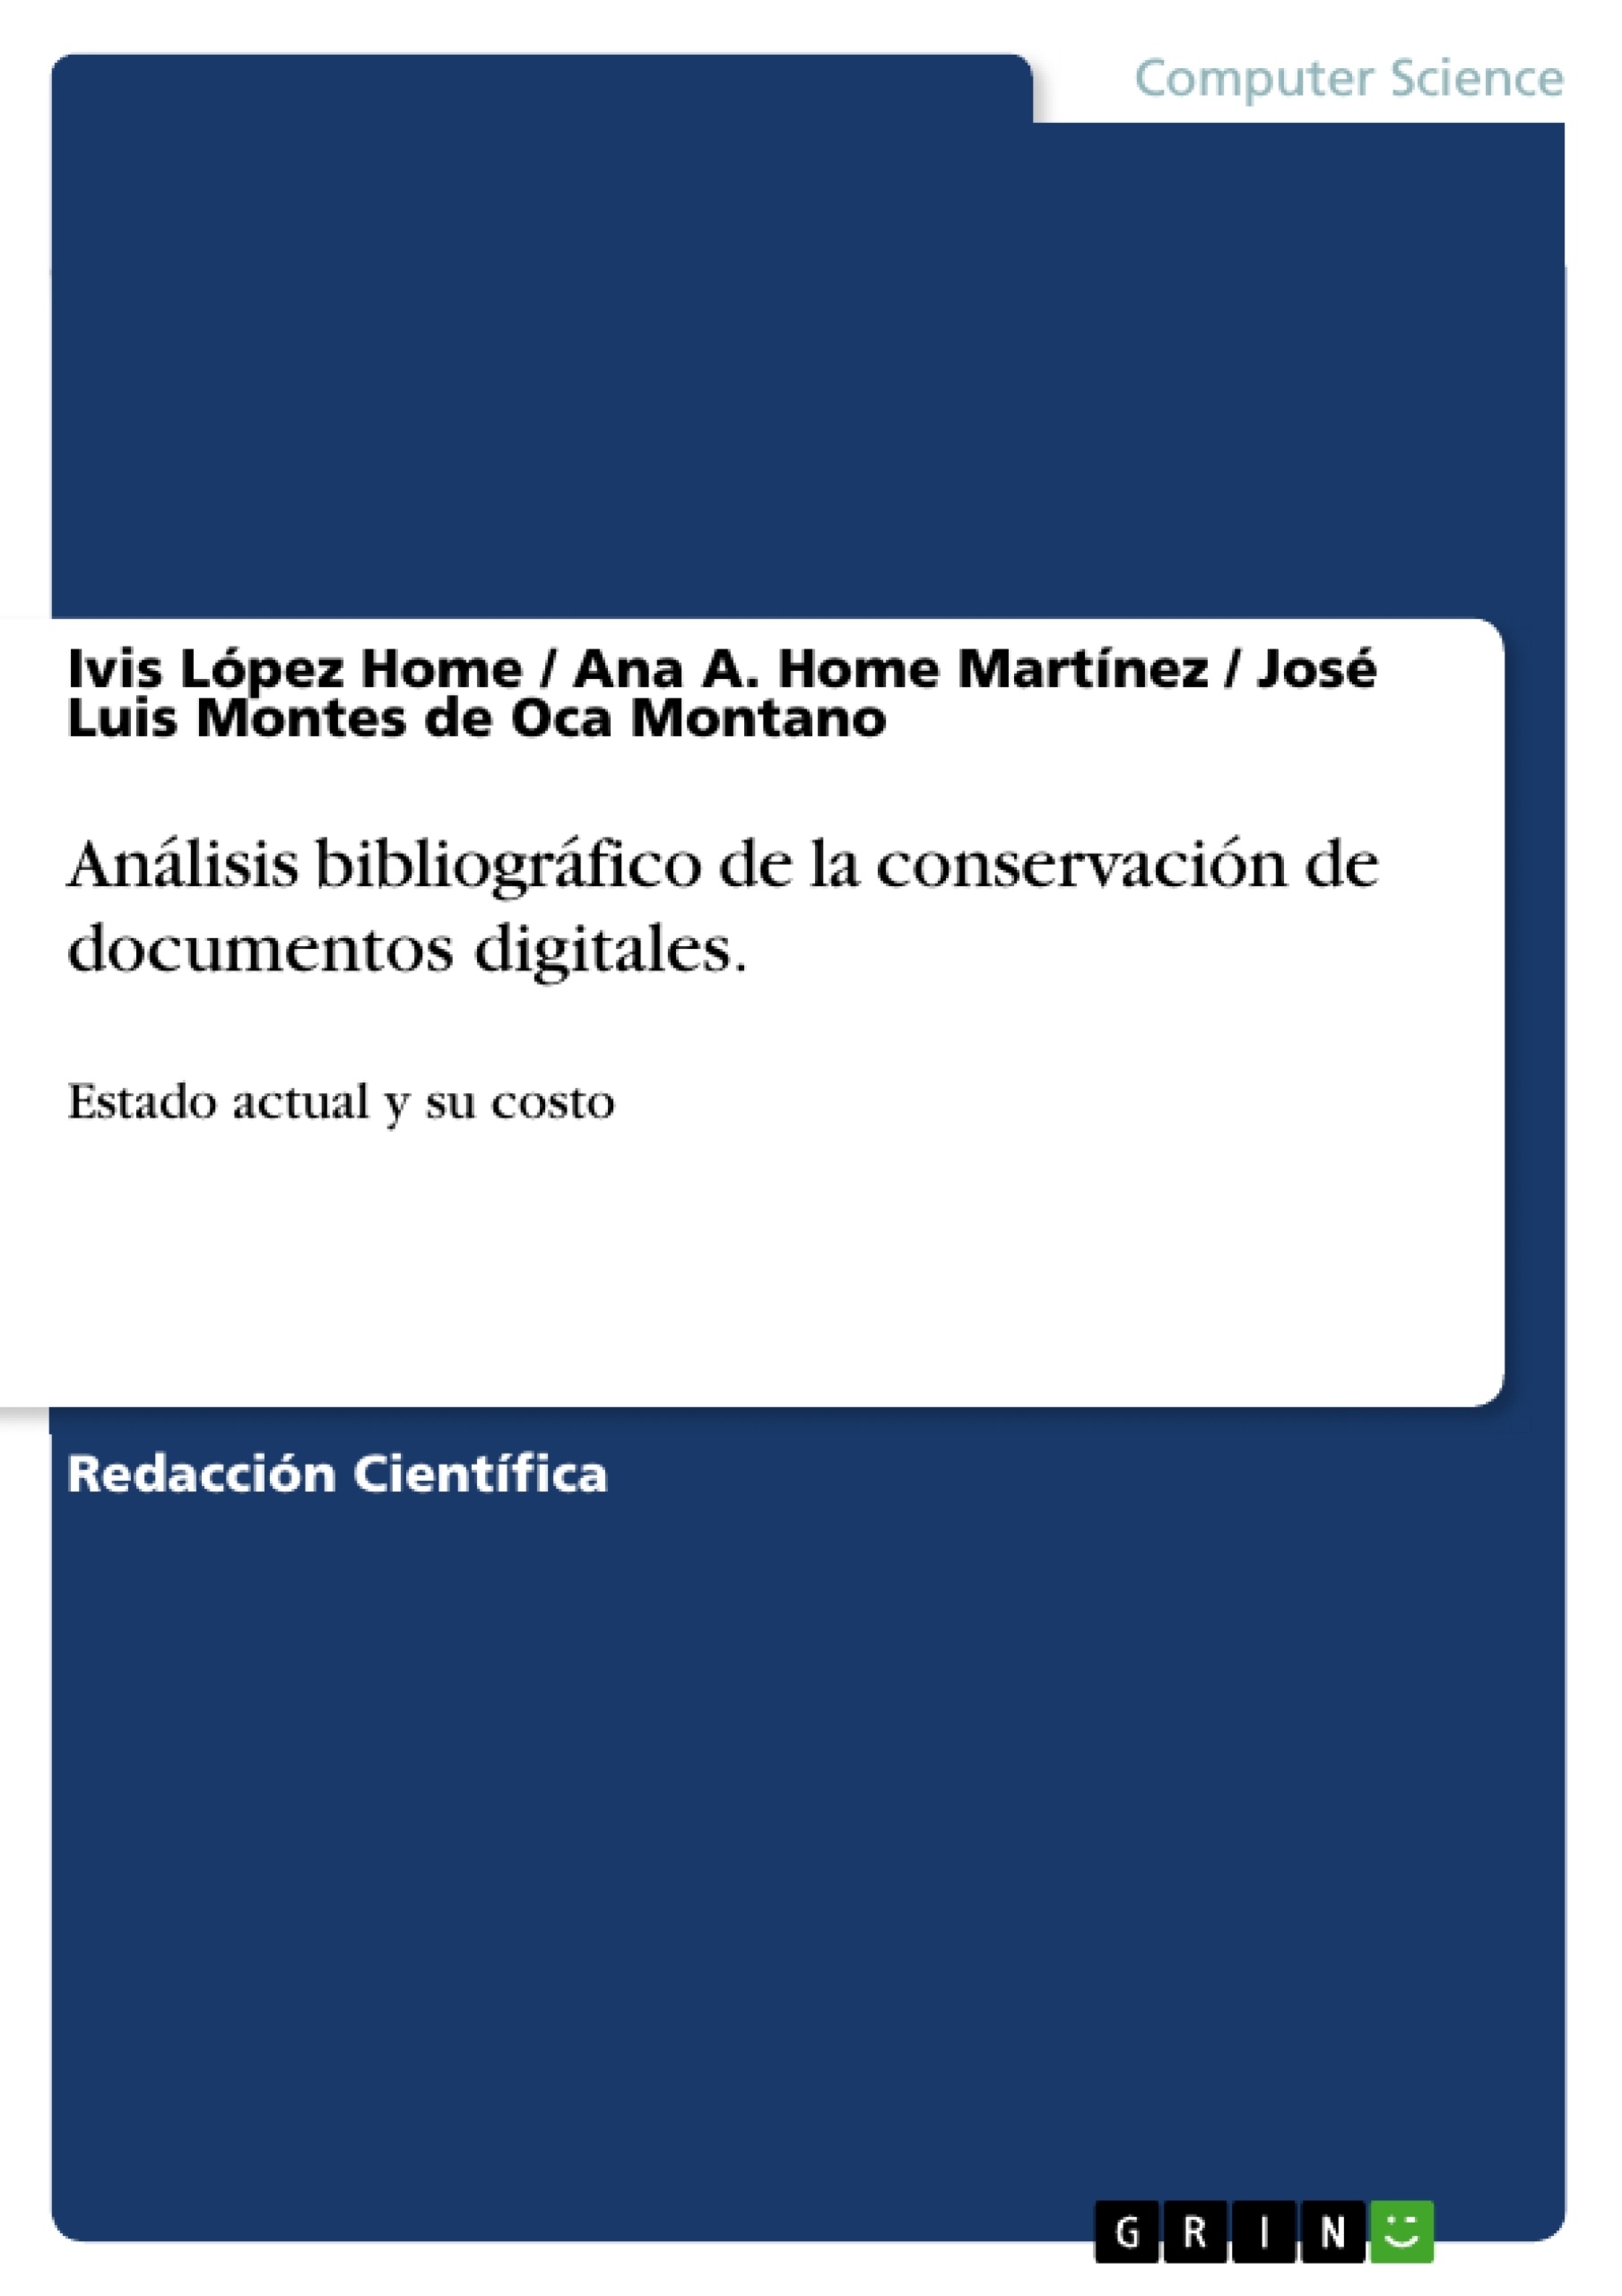 Title: Análisis bibliográfico de la conservación de documentos digitales.